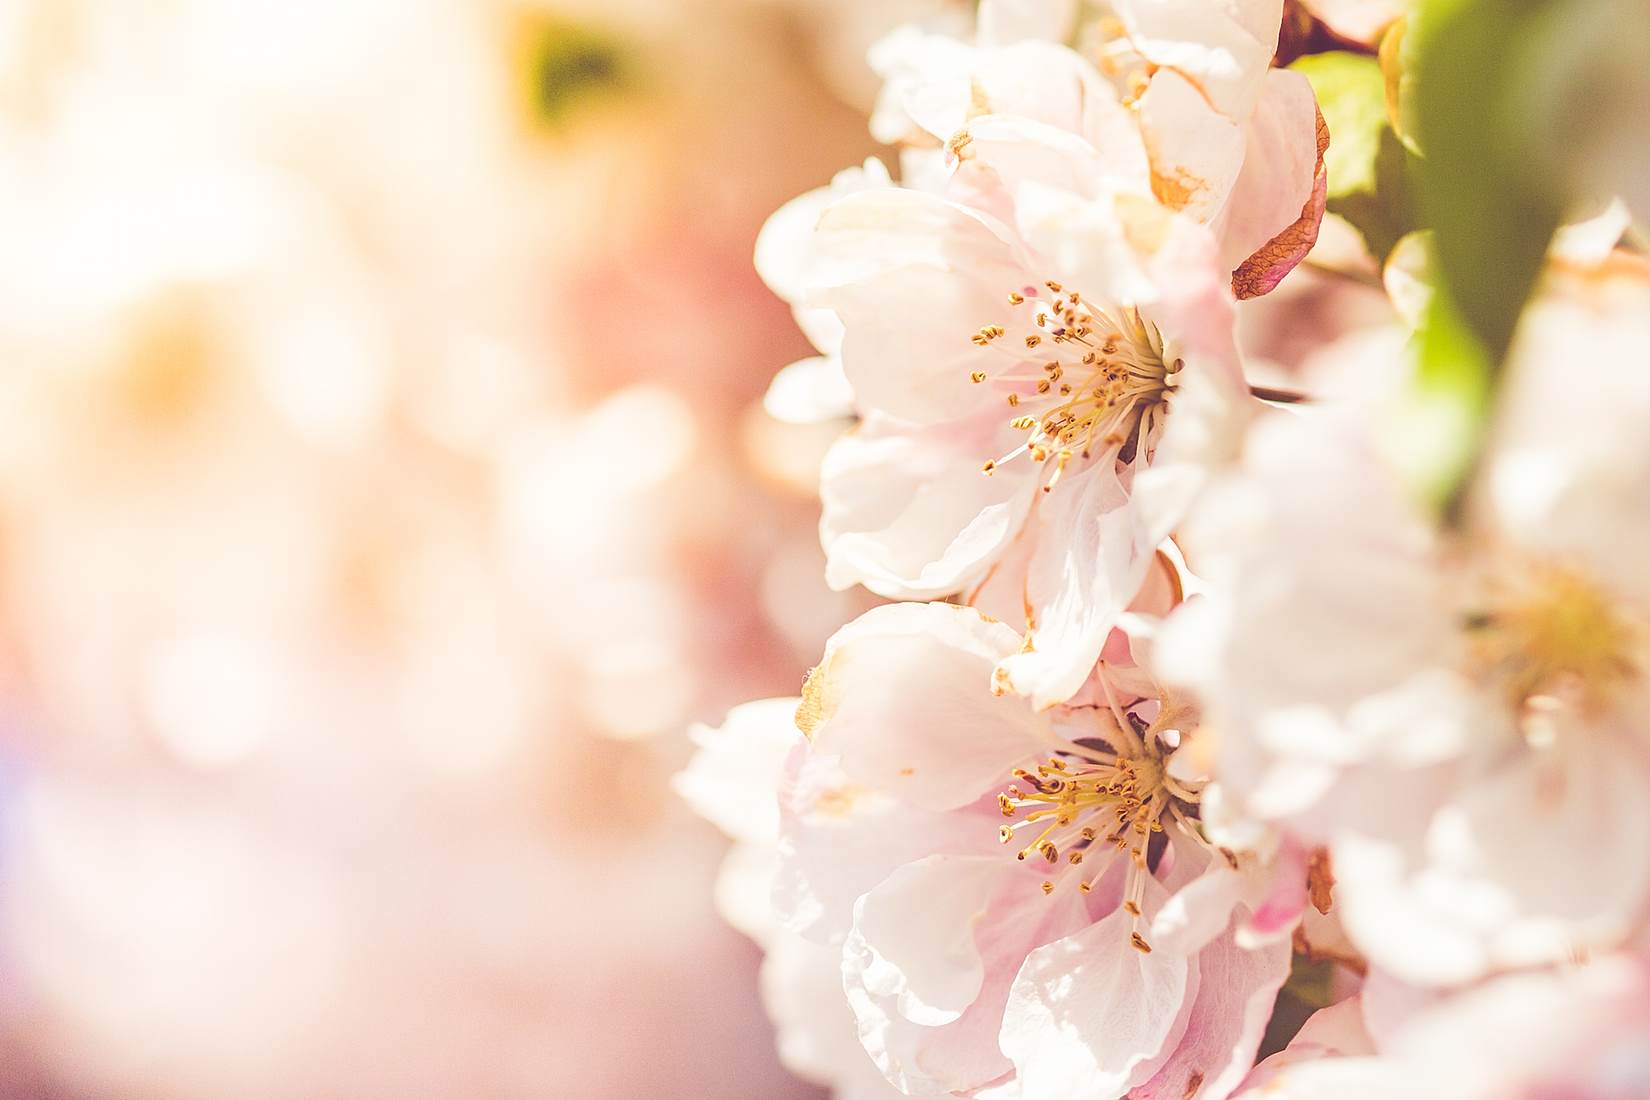 Wonderful Spring Blooms BY VIKTOR HANACEK